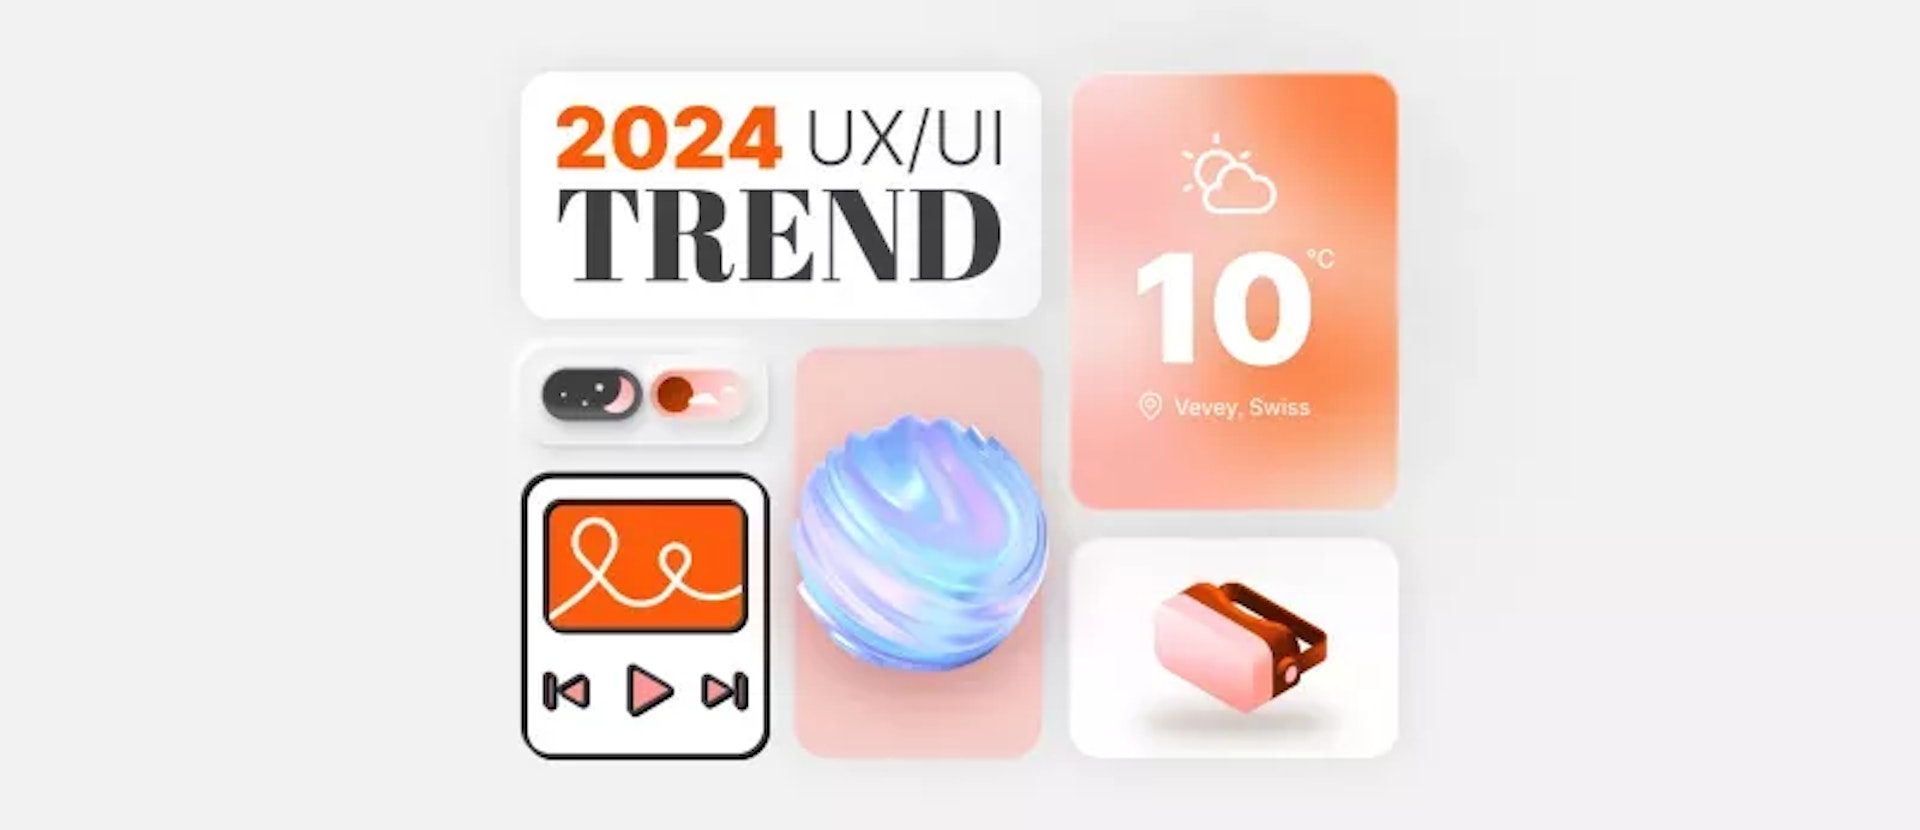 Couverture de blog - tendances UI/UX 2024